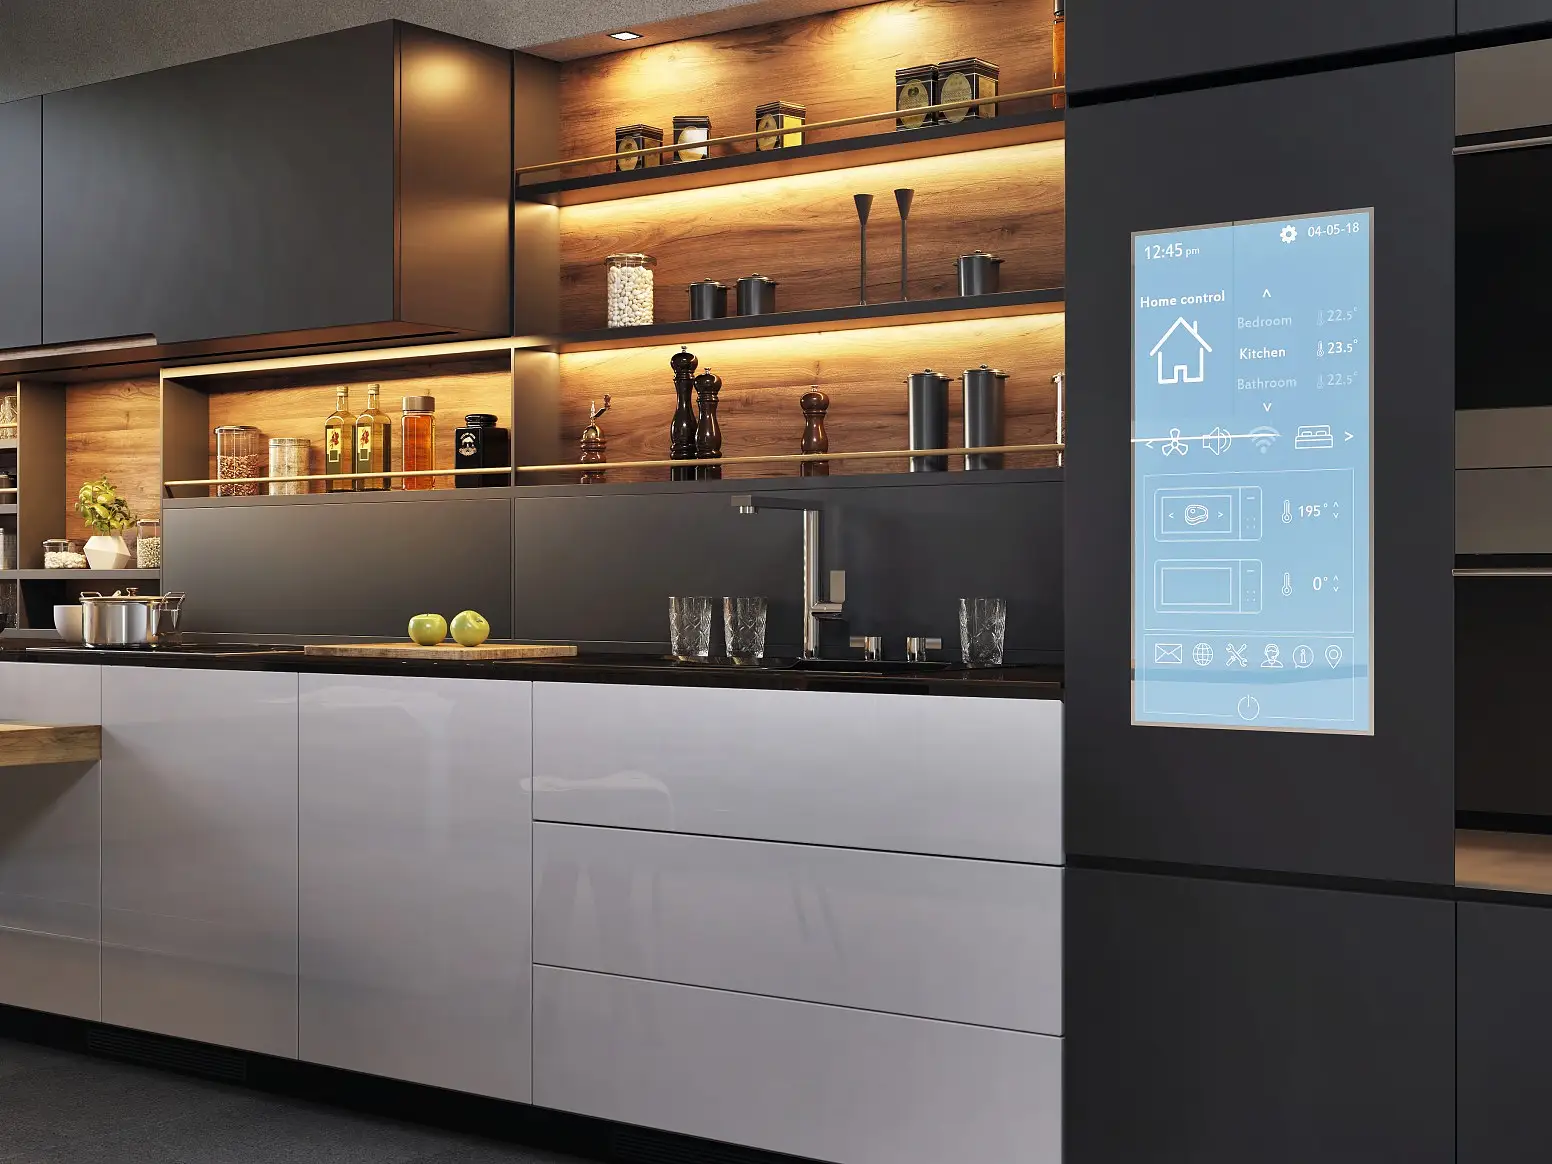 Panel kontrol rumah pintar pada dapur modern